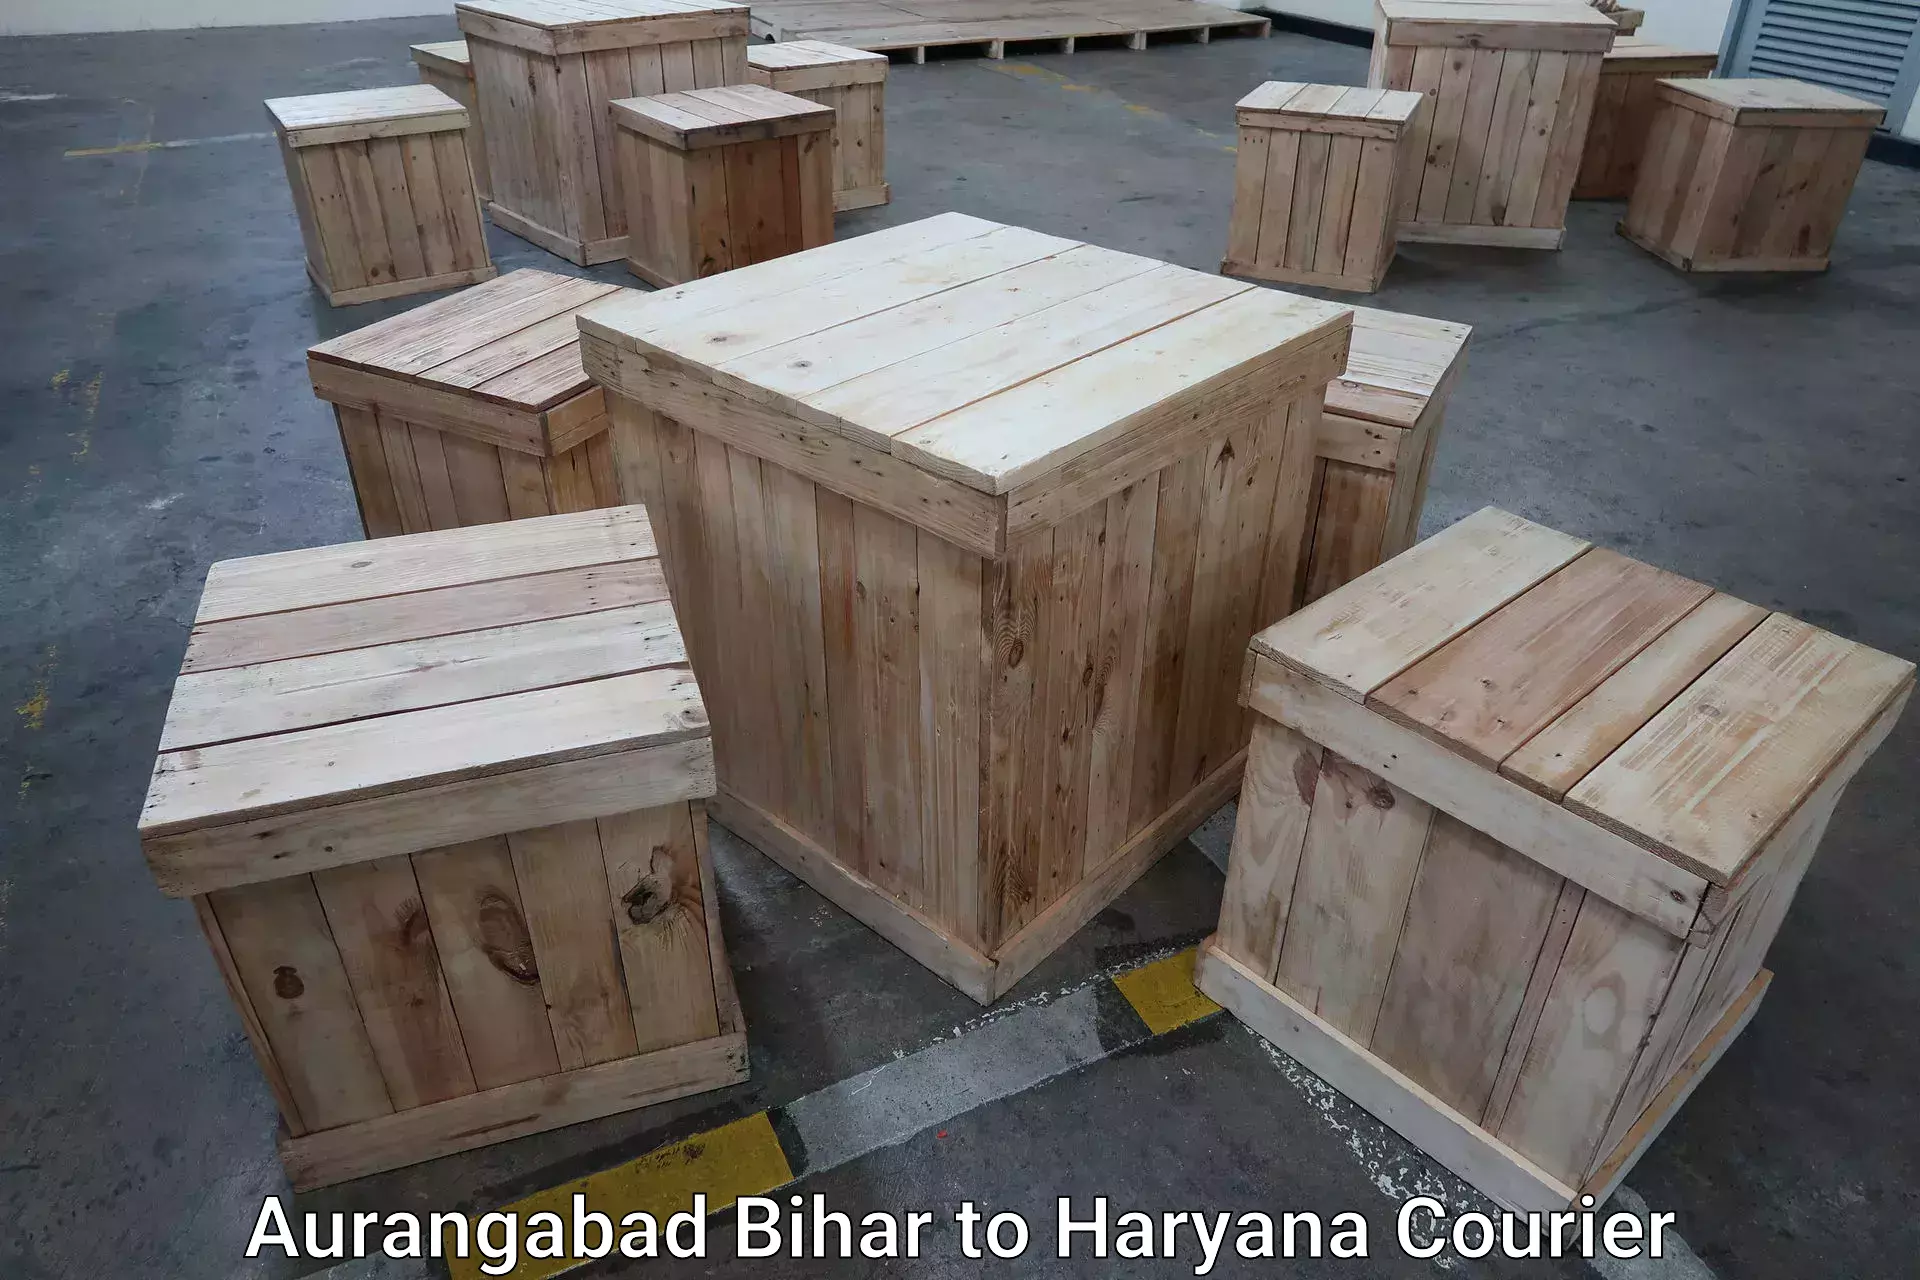 Luggage delivery providers Aurangabad Bihar to Barwala